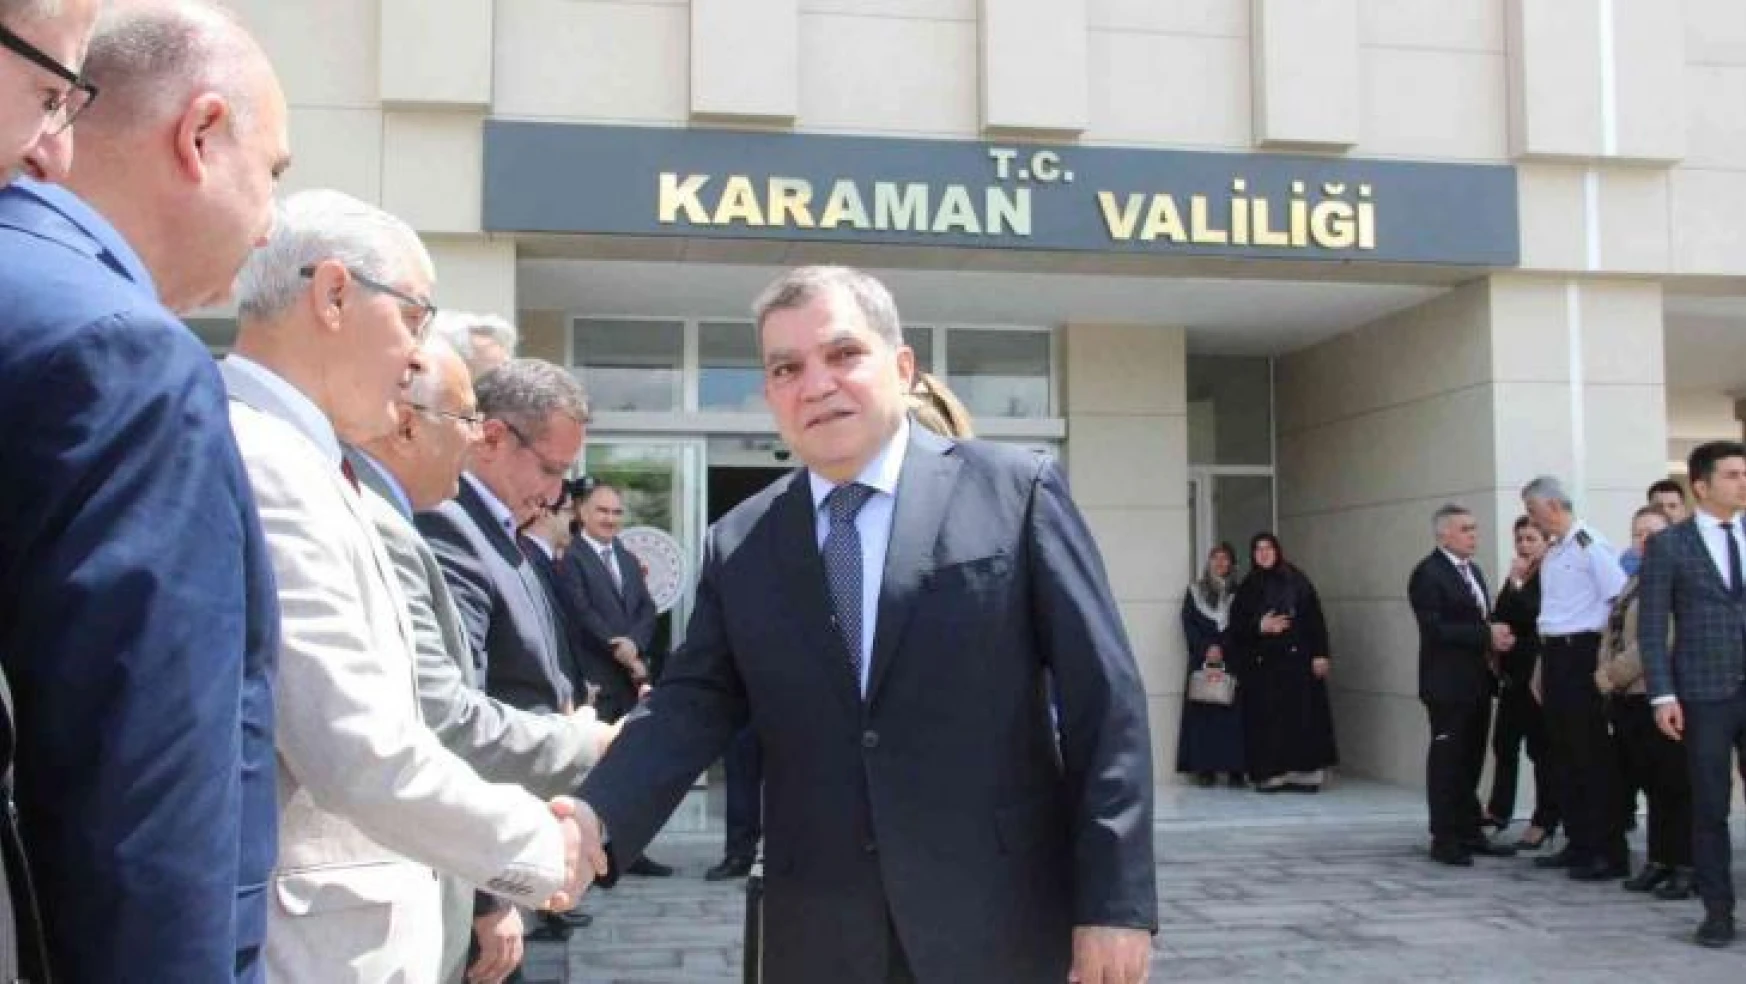 Vali Mehmet Alpaslan Işık, Karaman'dan ayrıldı